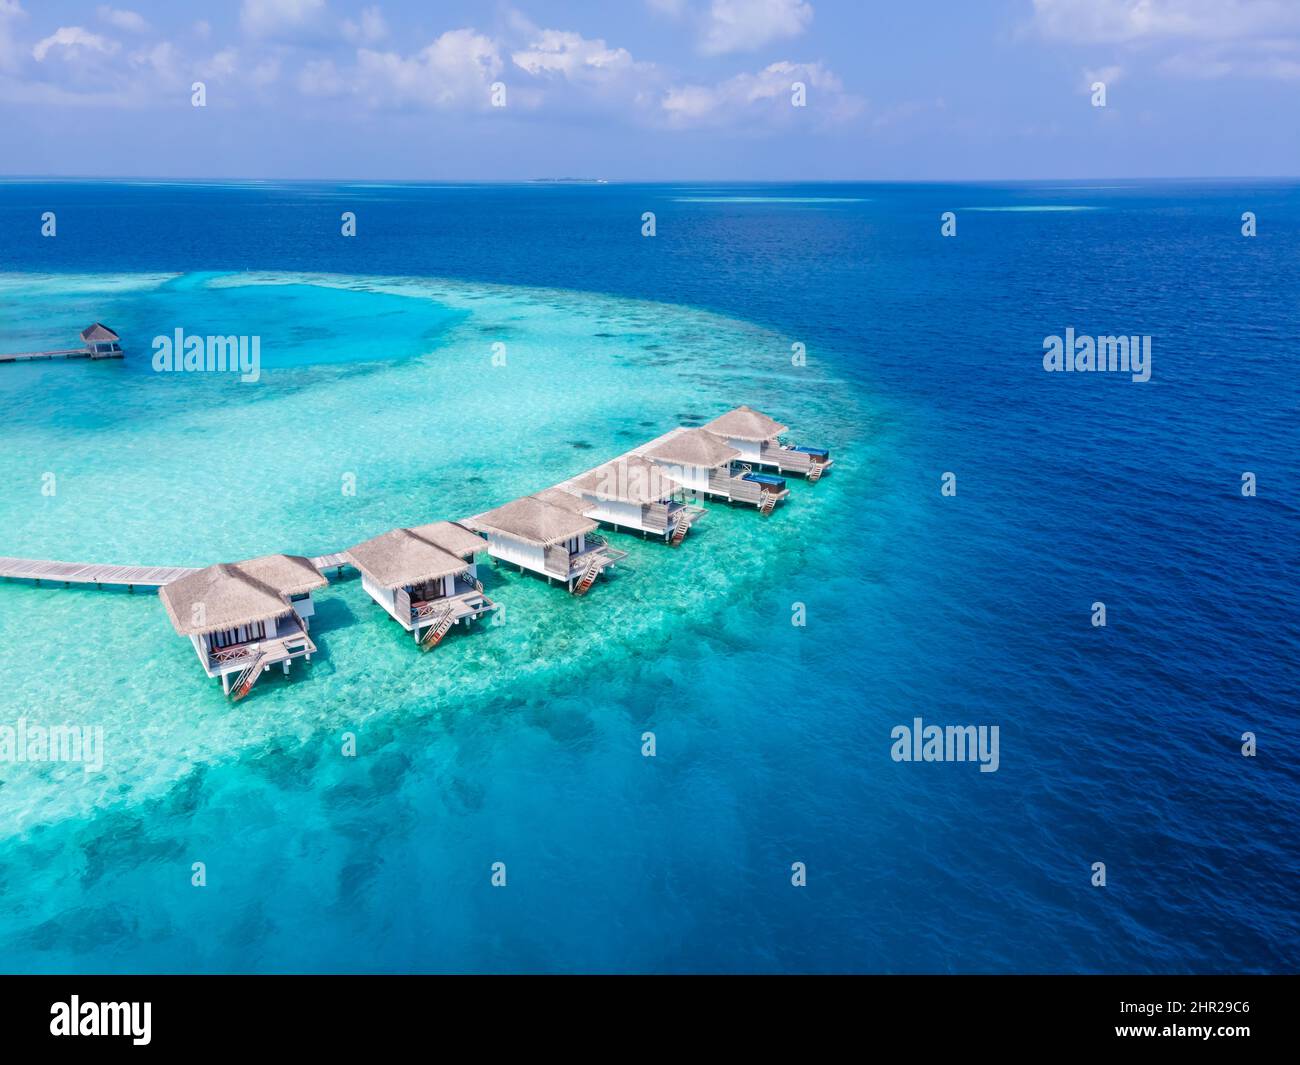 Chalets sobre el agua en la isla de atolón tropical para vacaciones viajes de vacaciones y luna de miel. Hotel resort de lujo en Maldivas o el Caribe con mar turquesa Foto de stock